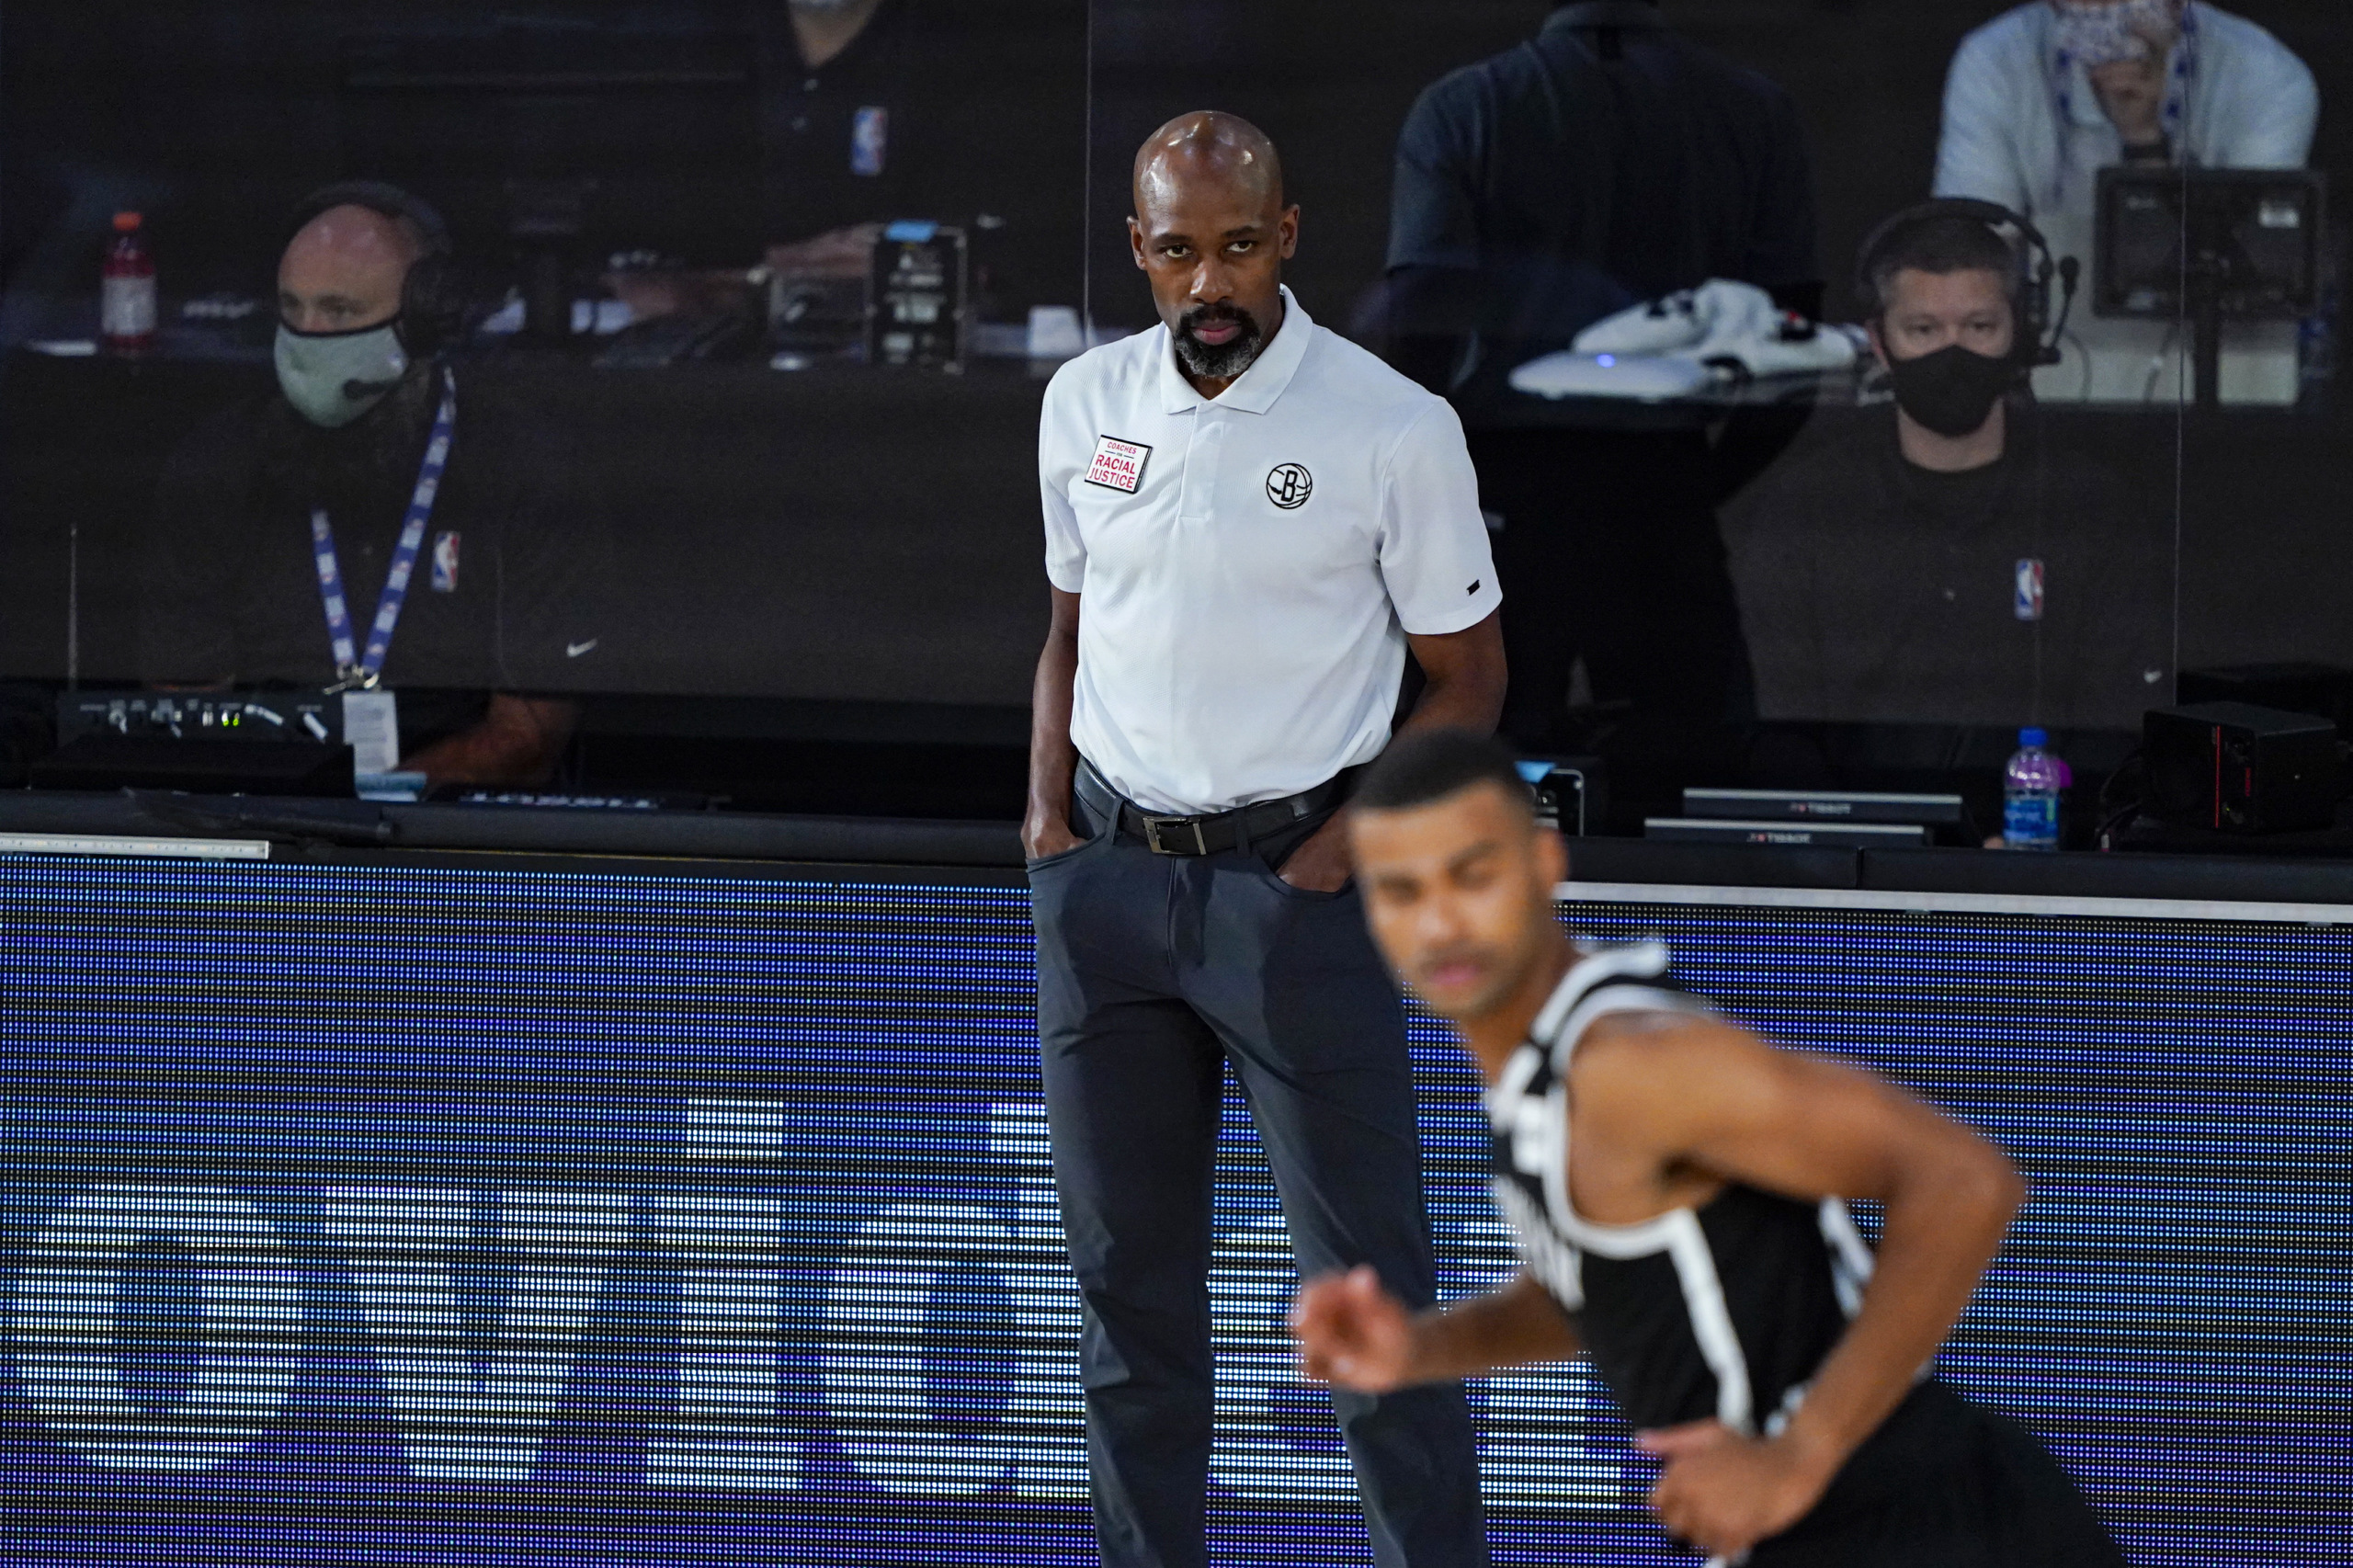 Nets’ Steve Nash Hire Reignites Talks About NBA's Lack of Black Coaches